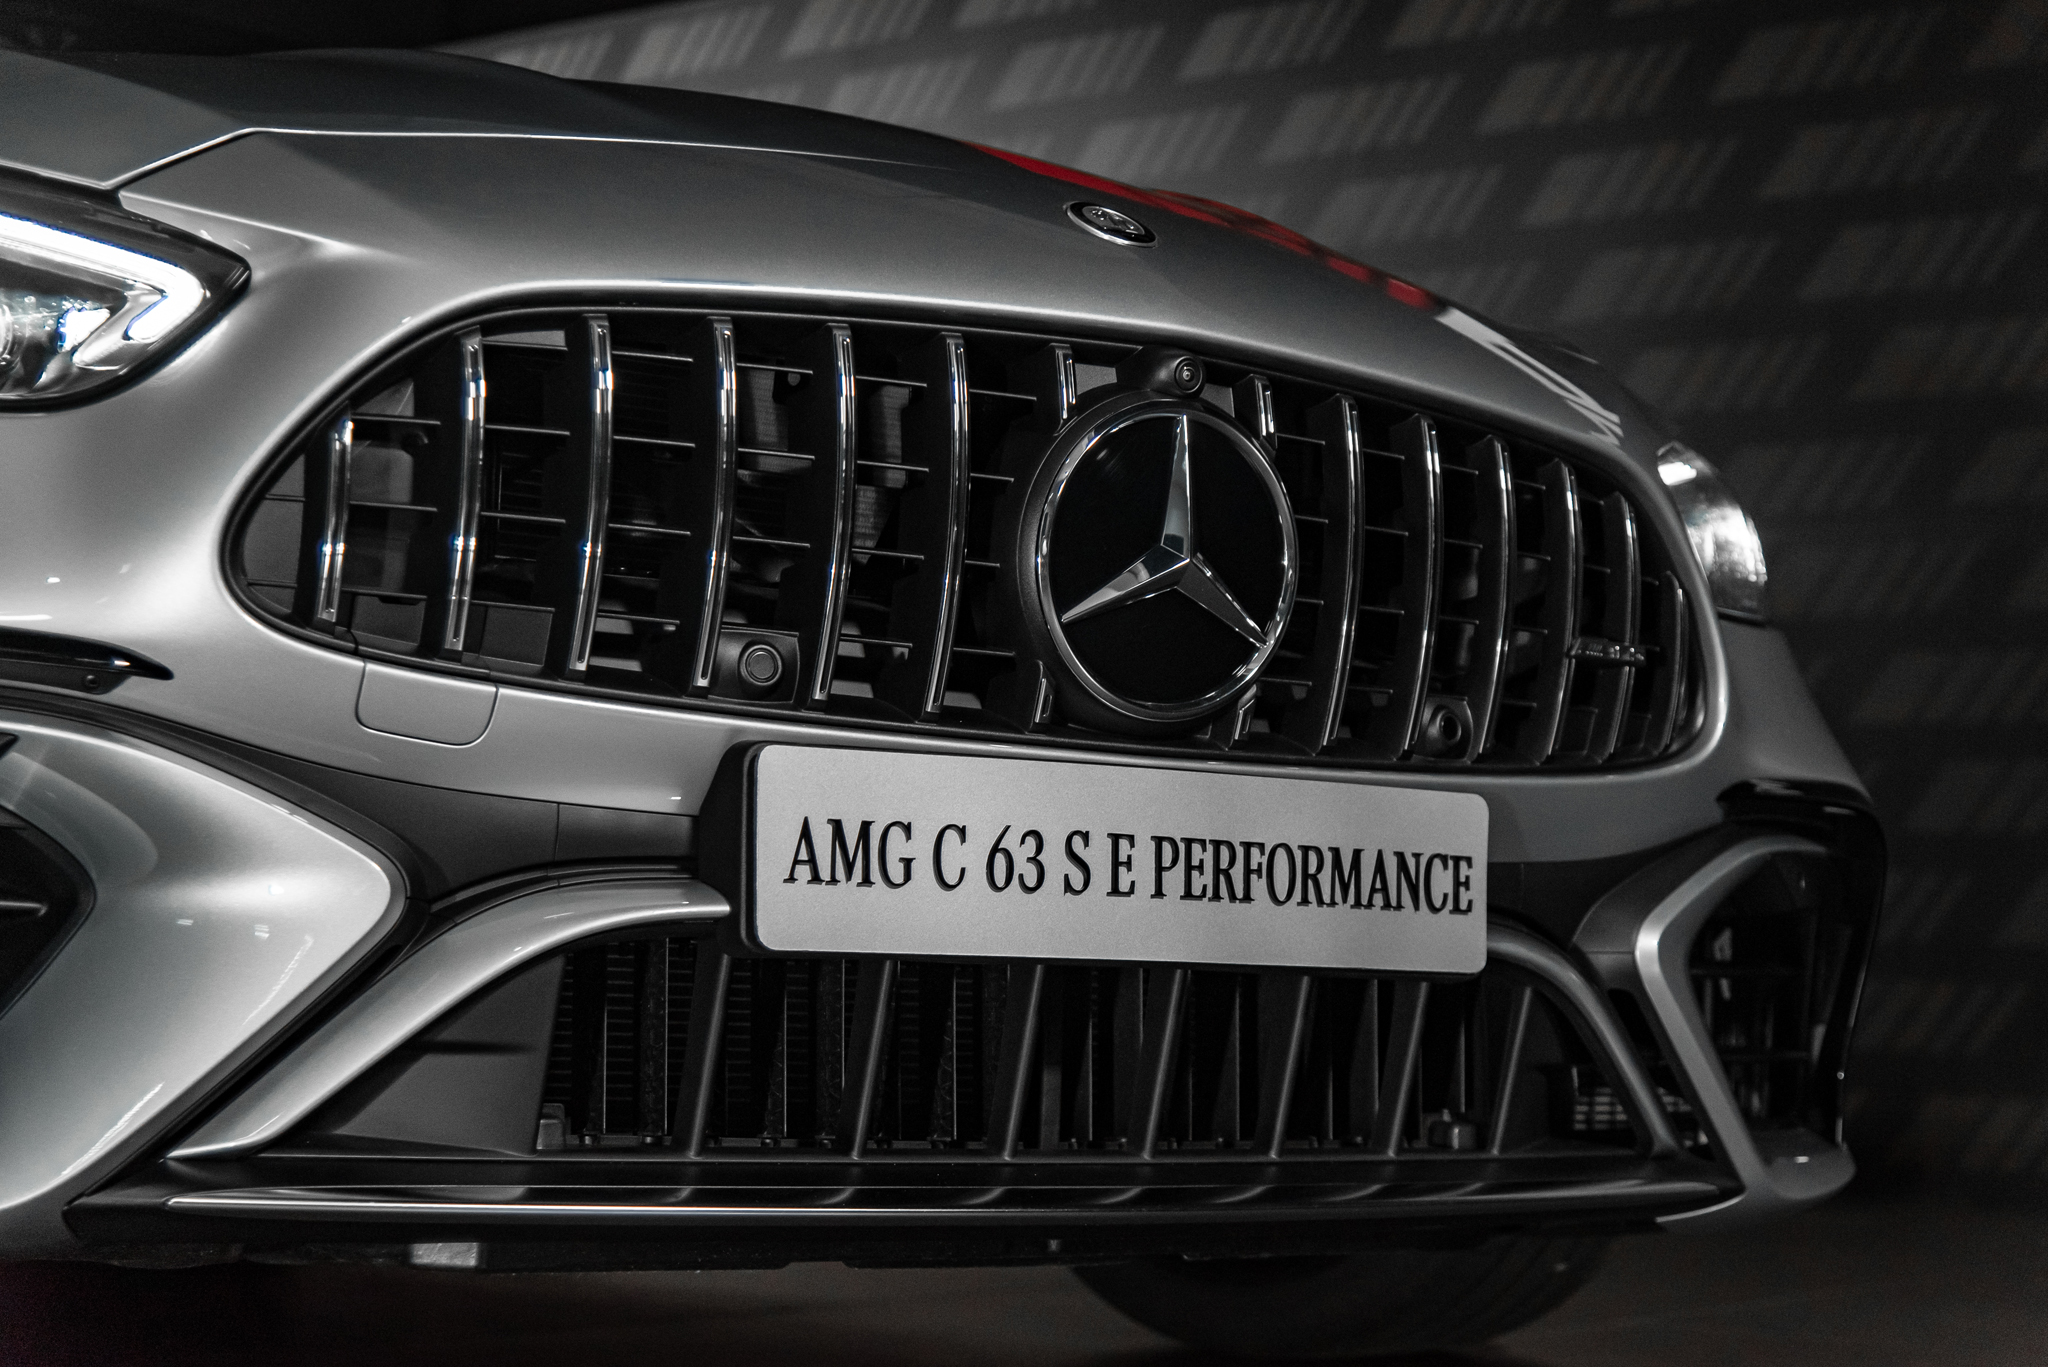 ‘Phù thủy retrofit Mercedes’ sở hữu GLE 53 trải nghiệm C 43 và C 63 S E Performance: ‘AMG 2 số vẫn có thể đi hàng ngày’- Ảnh 29.